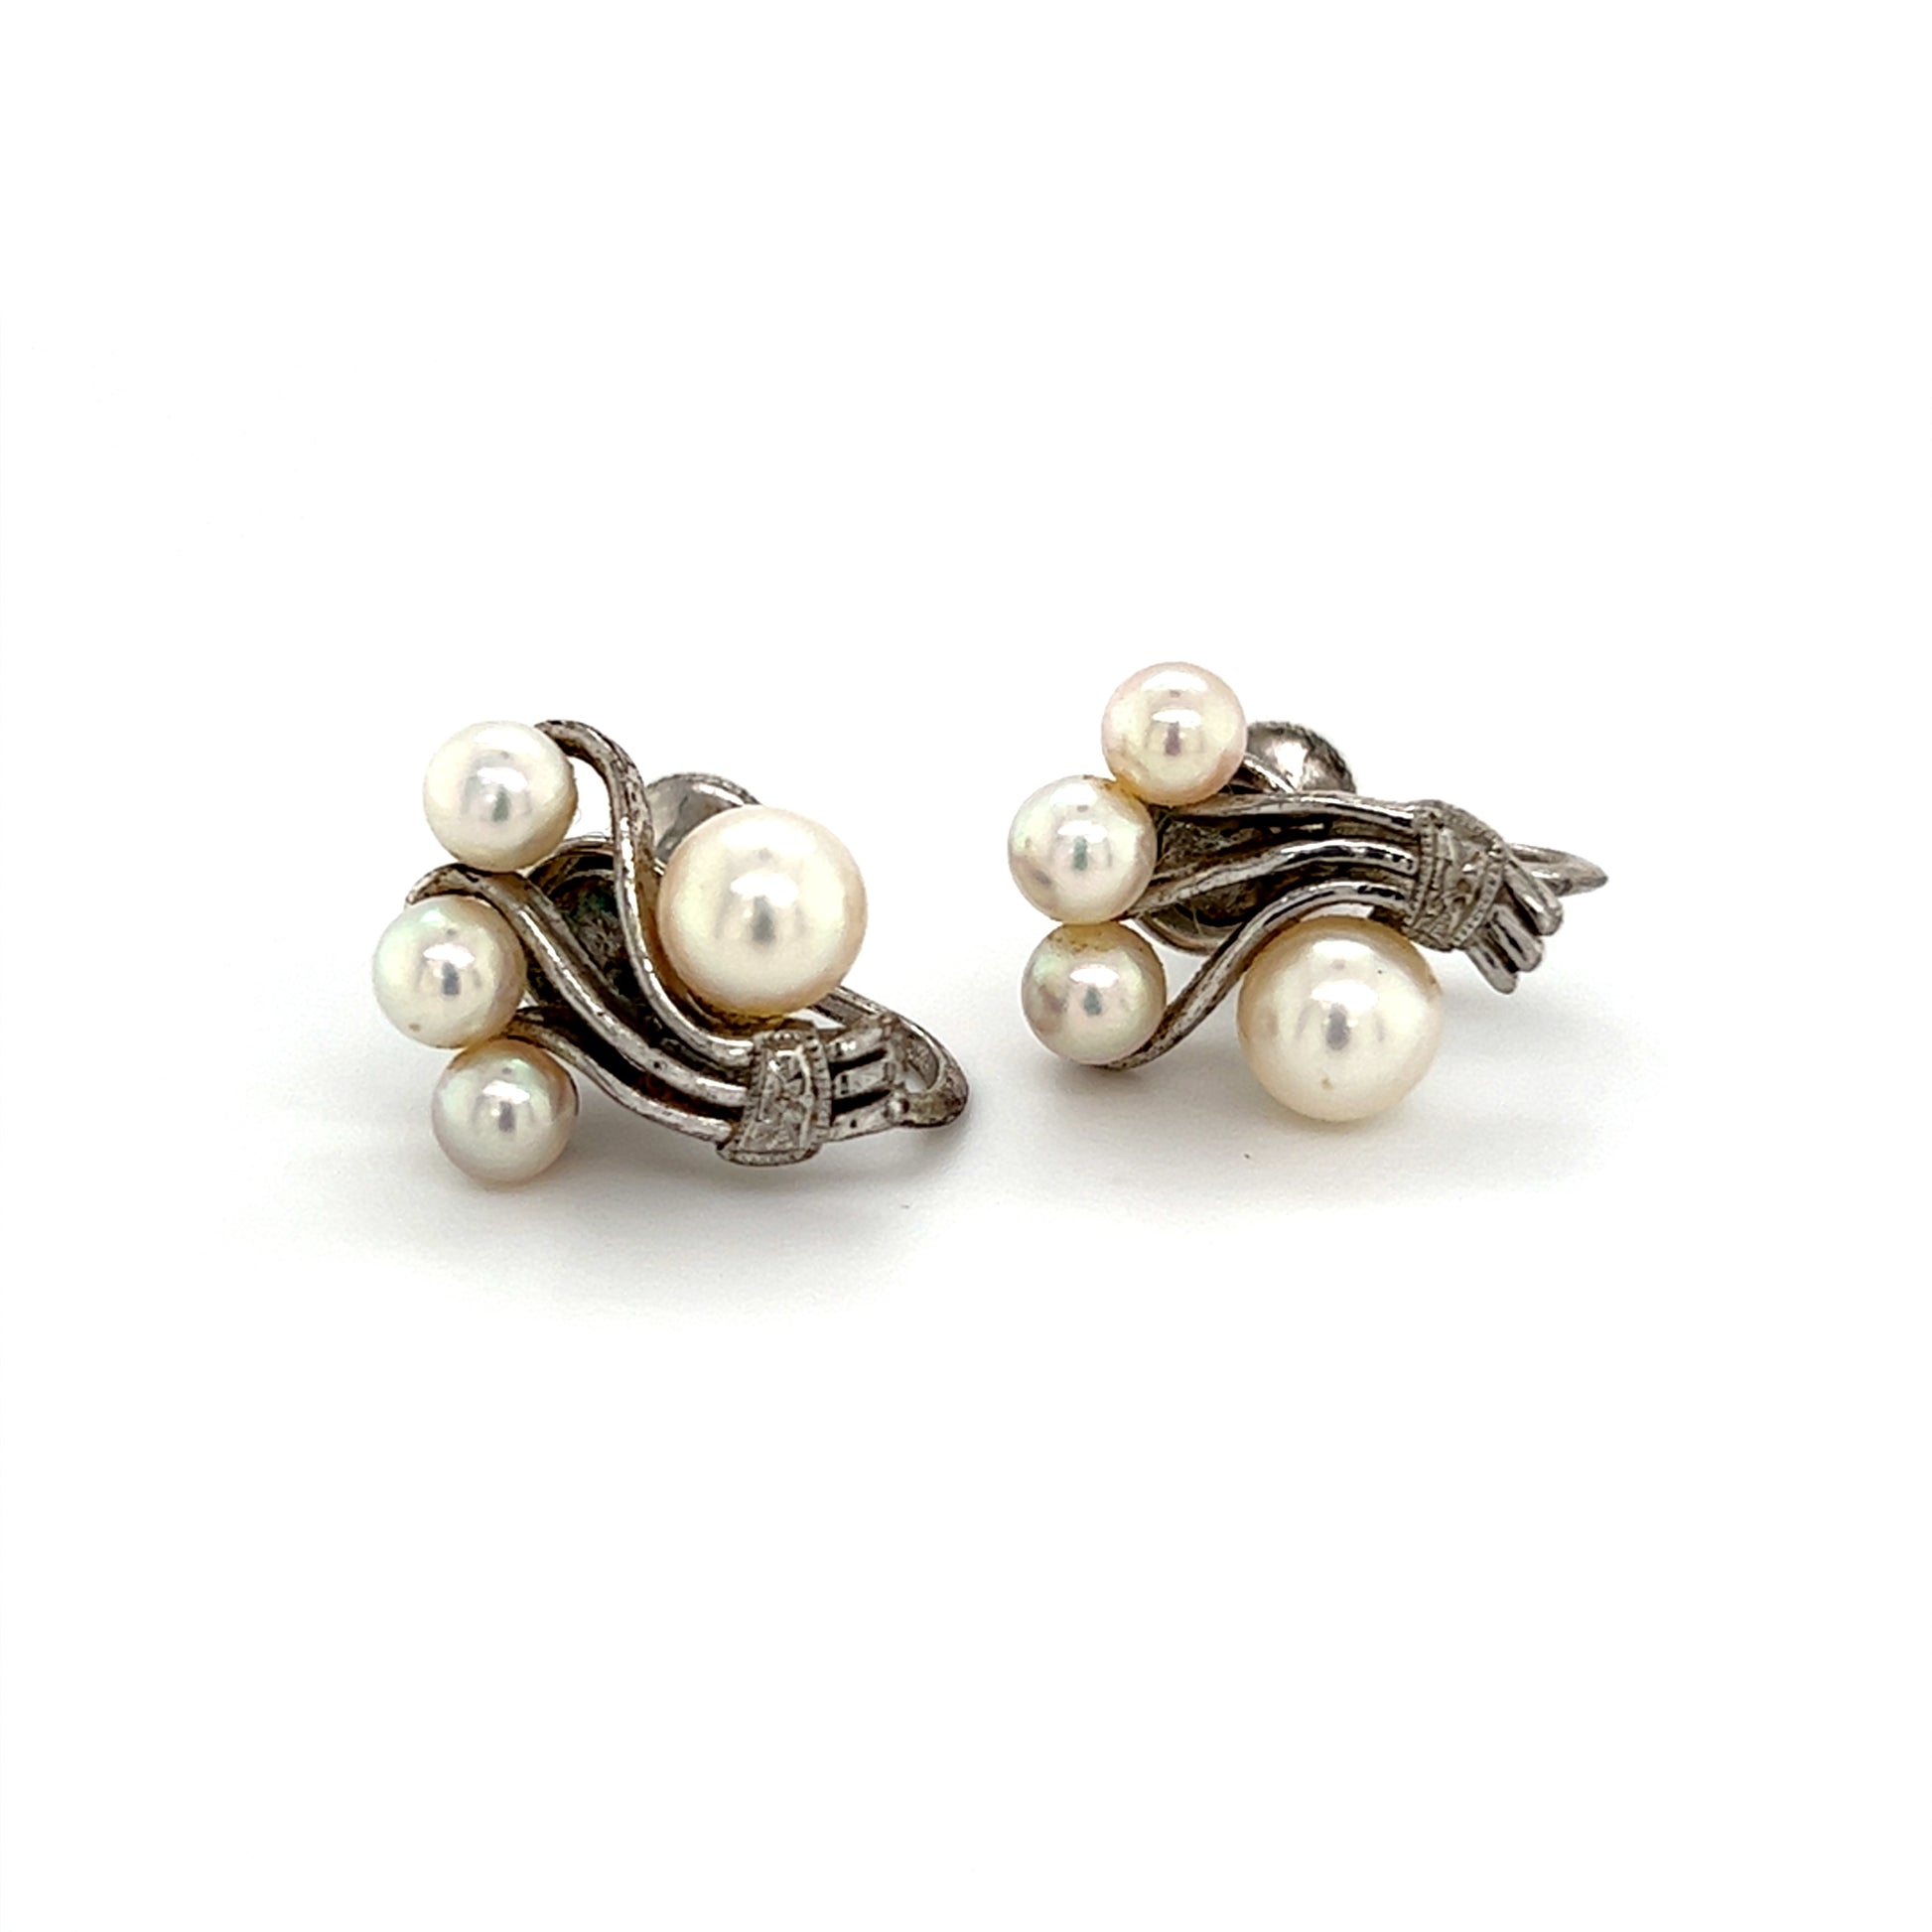 Mikimoto Estate Akoya Pearl Earrings Sterling Silver 5.75 mm 4.5 Grams M253 - Certified Fine Jewelry